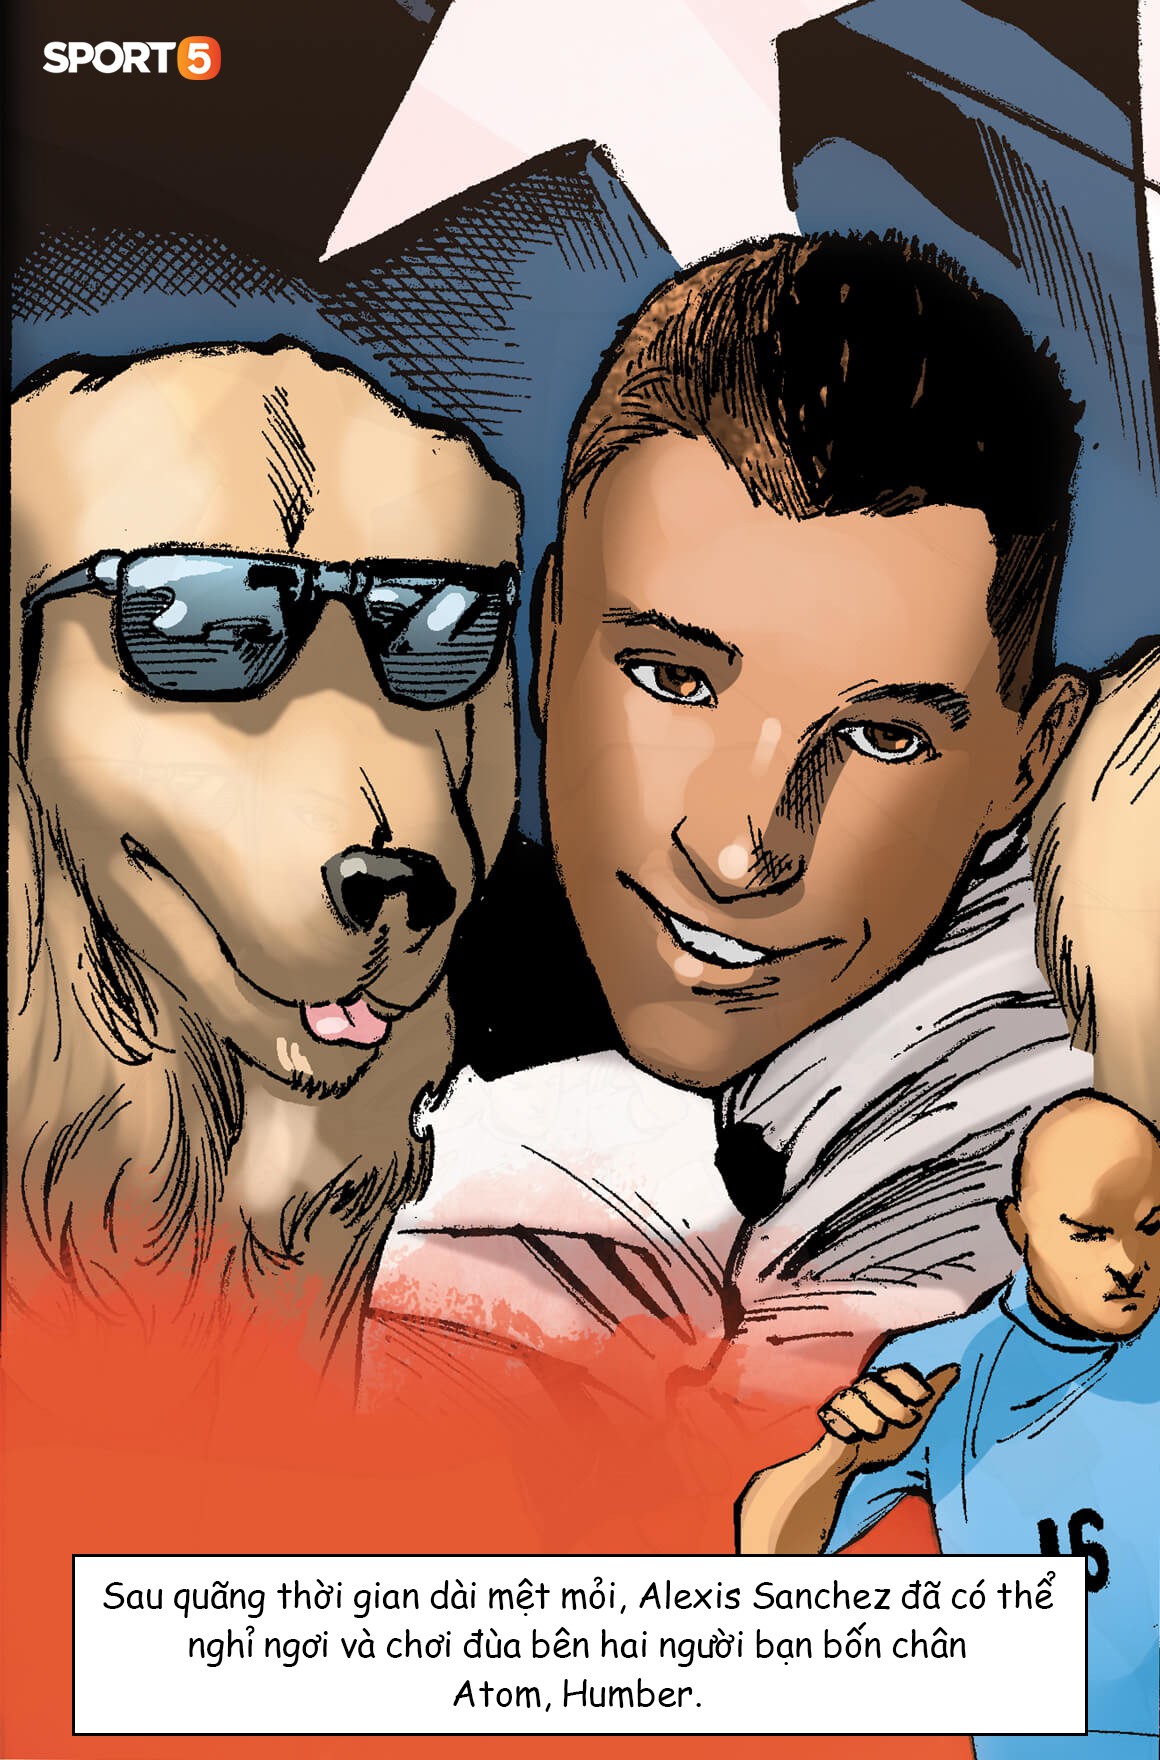 Truyện World Cup phong cách Marvel: Giấc mơ Mỹ và kỳ nghỉ bên hai chú chó của Sanchez (chương 5) - Ảnh 6.